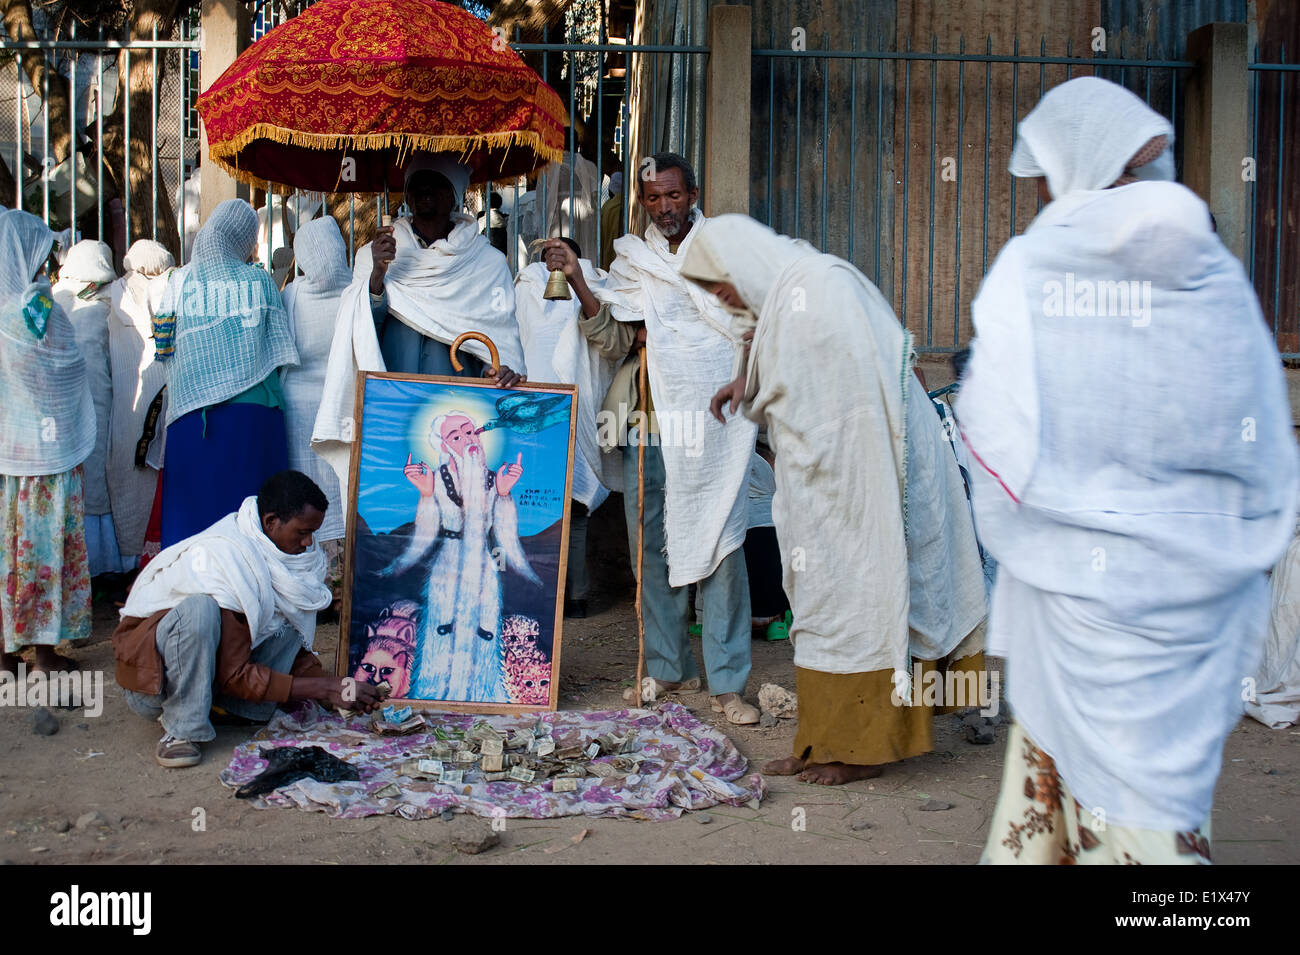 Las personas están dando dinero para mantener a la iglesia ortodoxa etíope, dedicado a un santo ( es decir, Saint Gebre Manfus Kiddus). Foto de stock